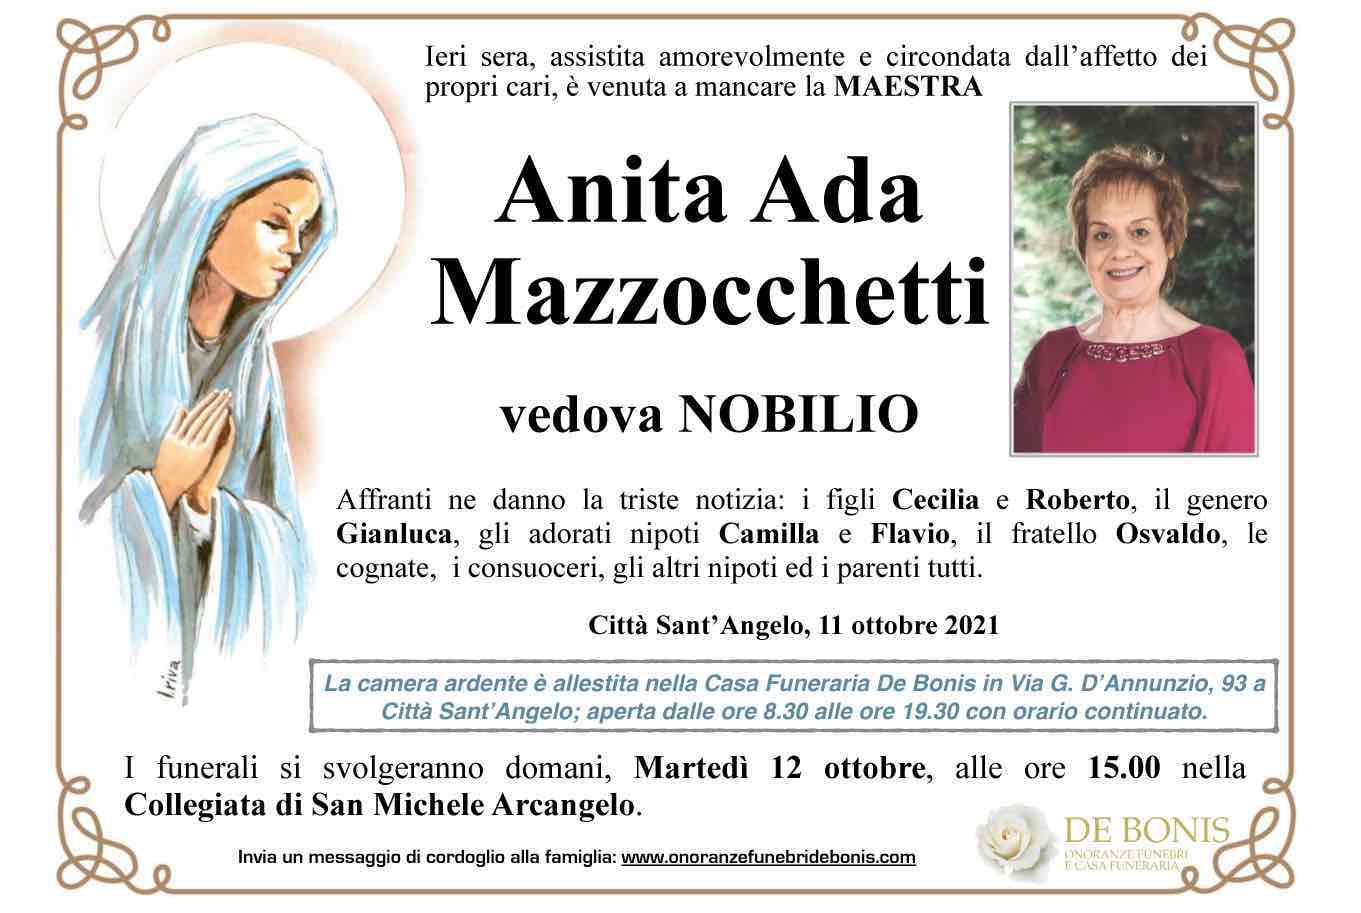 Anita Ada Mazzocchetti